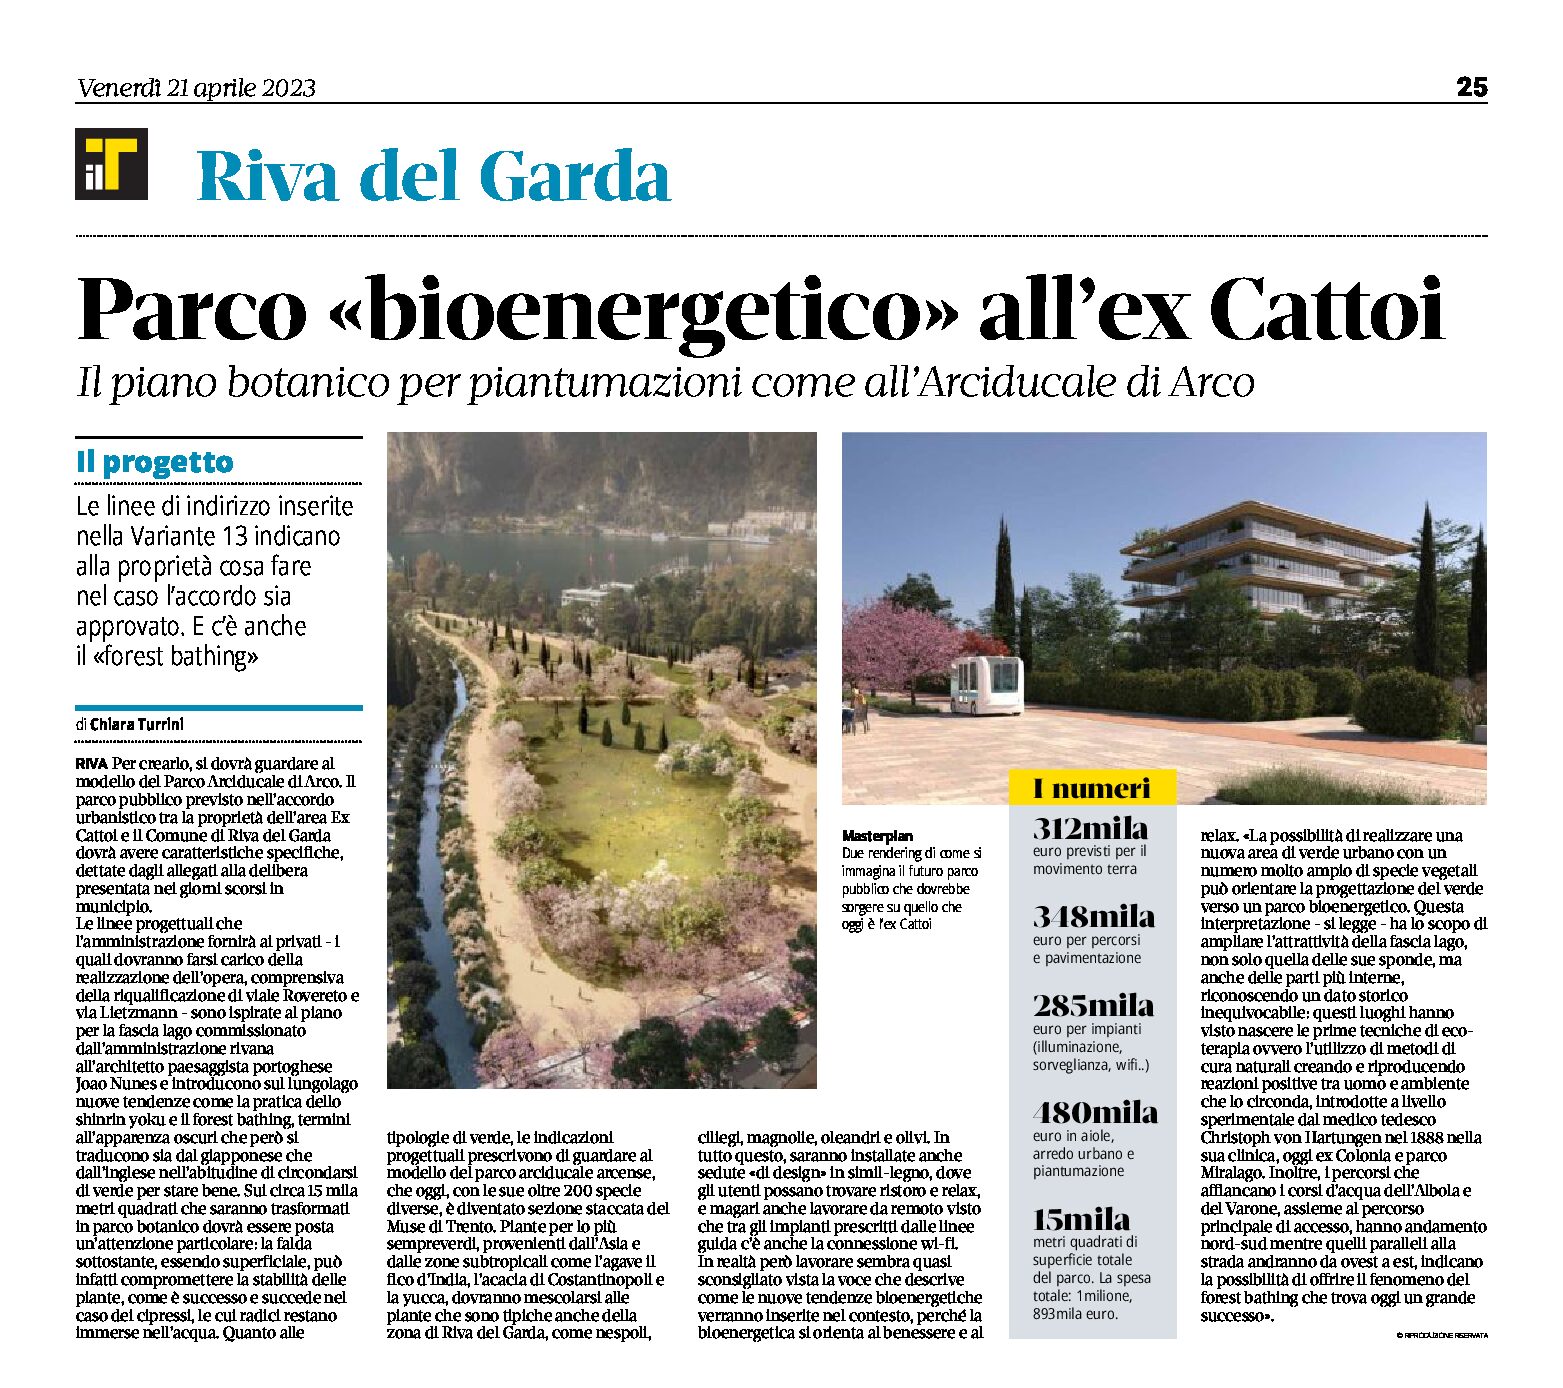 Riva, ex Cattoi: parco “bioenergetico”. Il piano botanico per piantumazioni come all’Arciducale di Arco